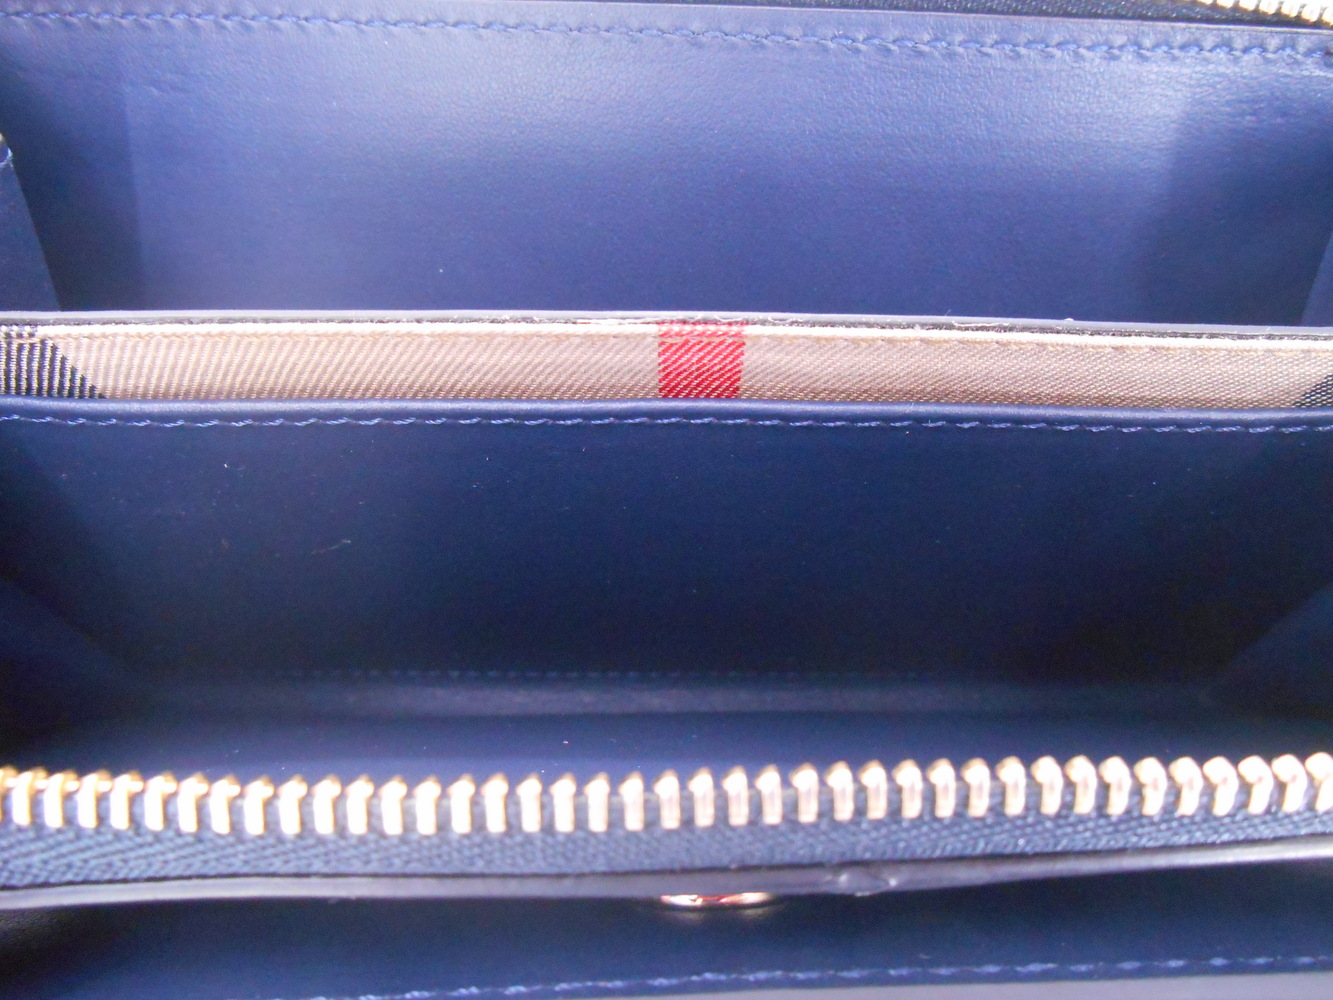 Burberry Alvington Large Leather Wallet